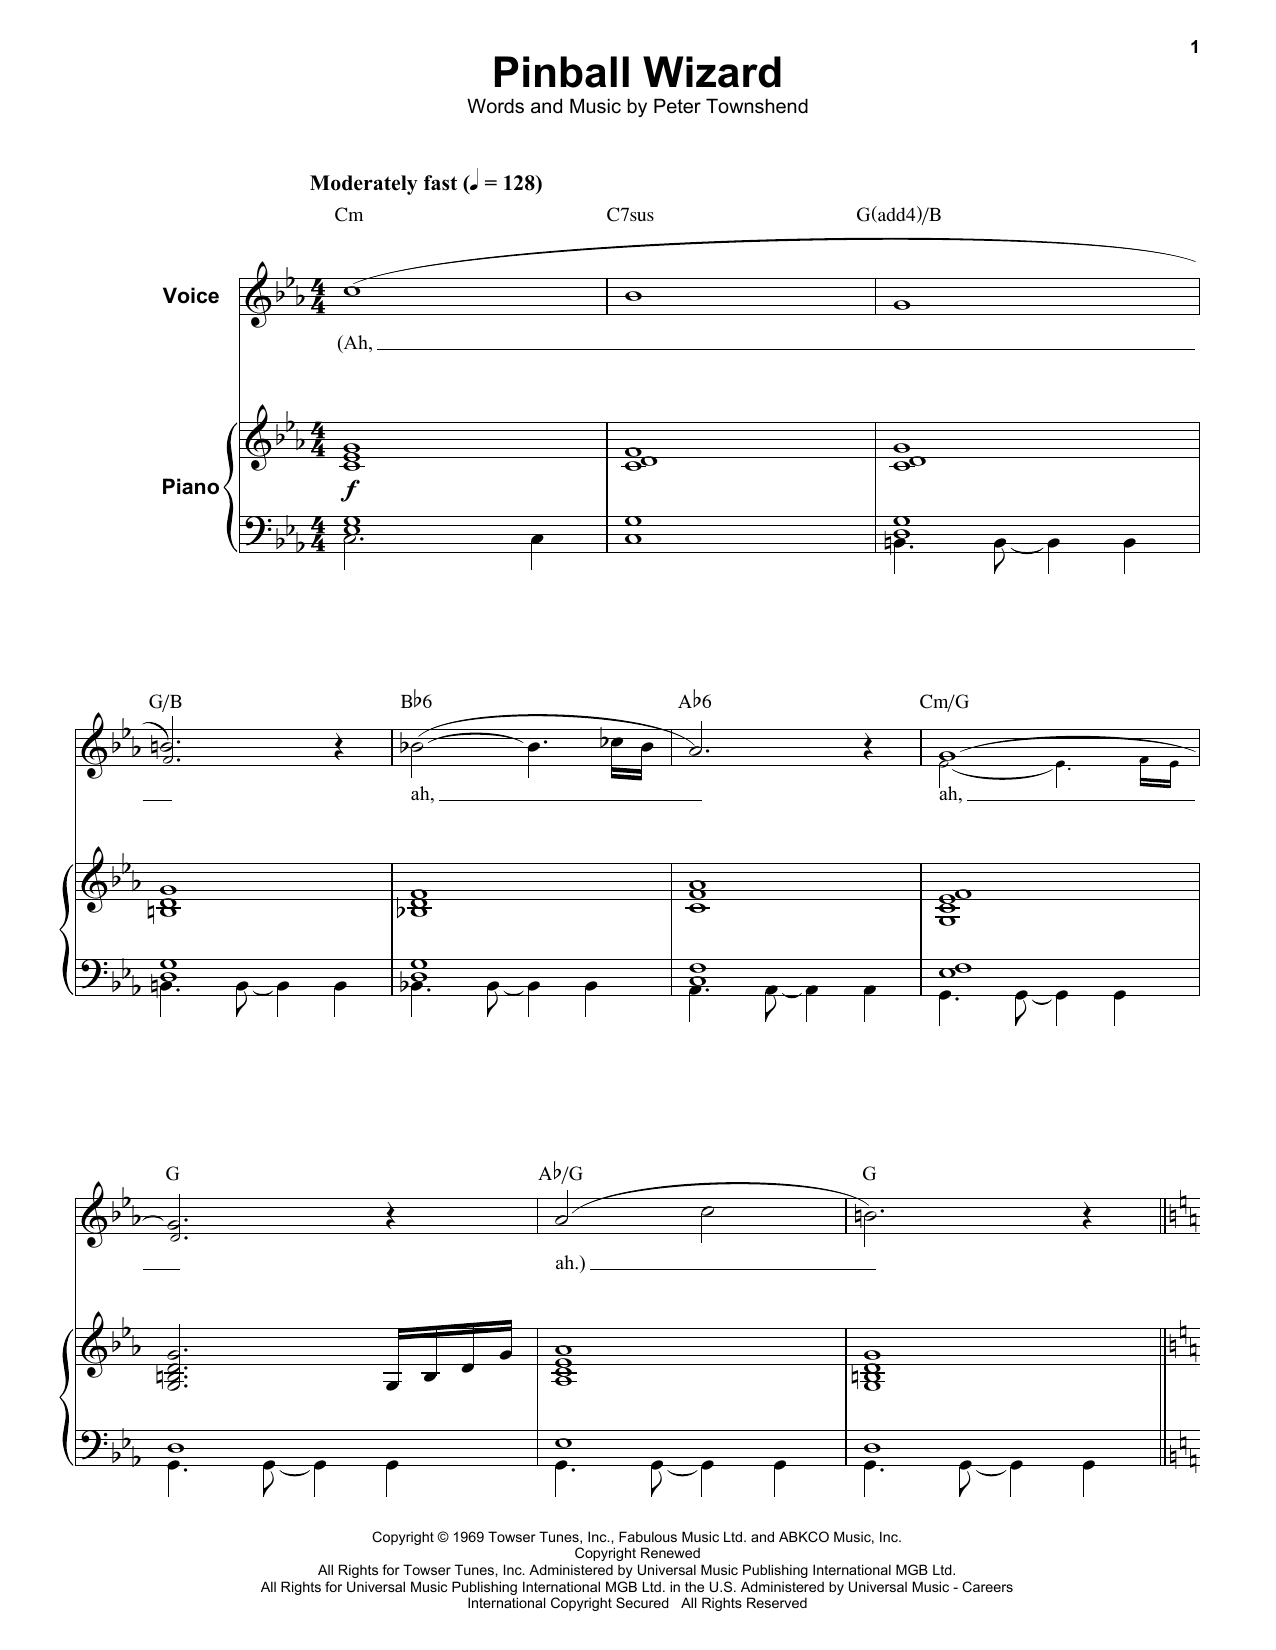 Elton John Pinball Wizard Sheet Music Notes & Chords for Guitar Chords/Lyrics - Download or Print PDF